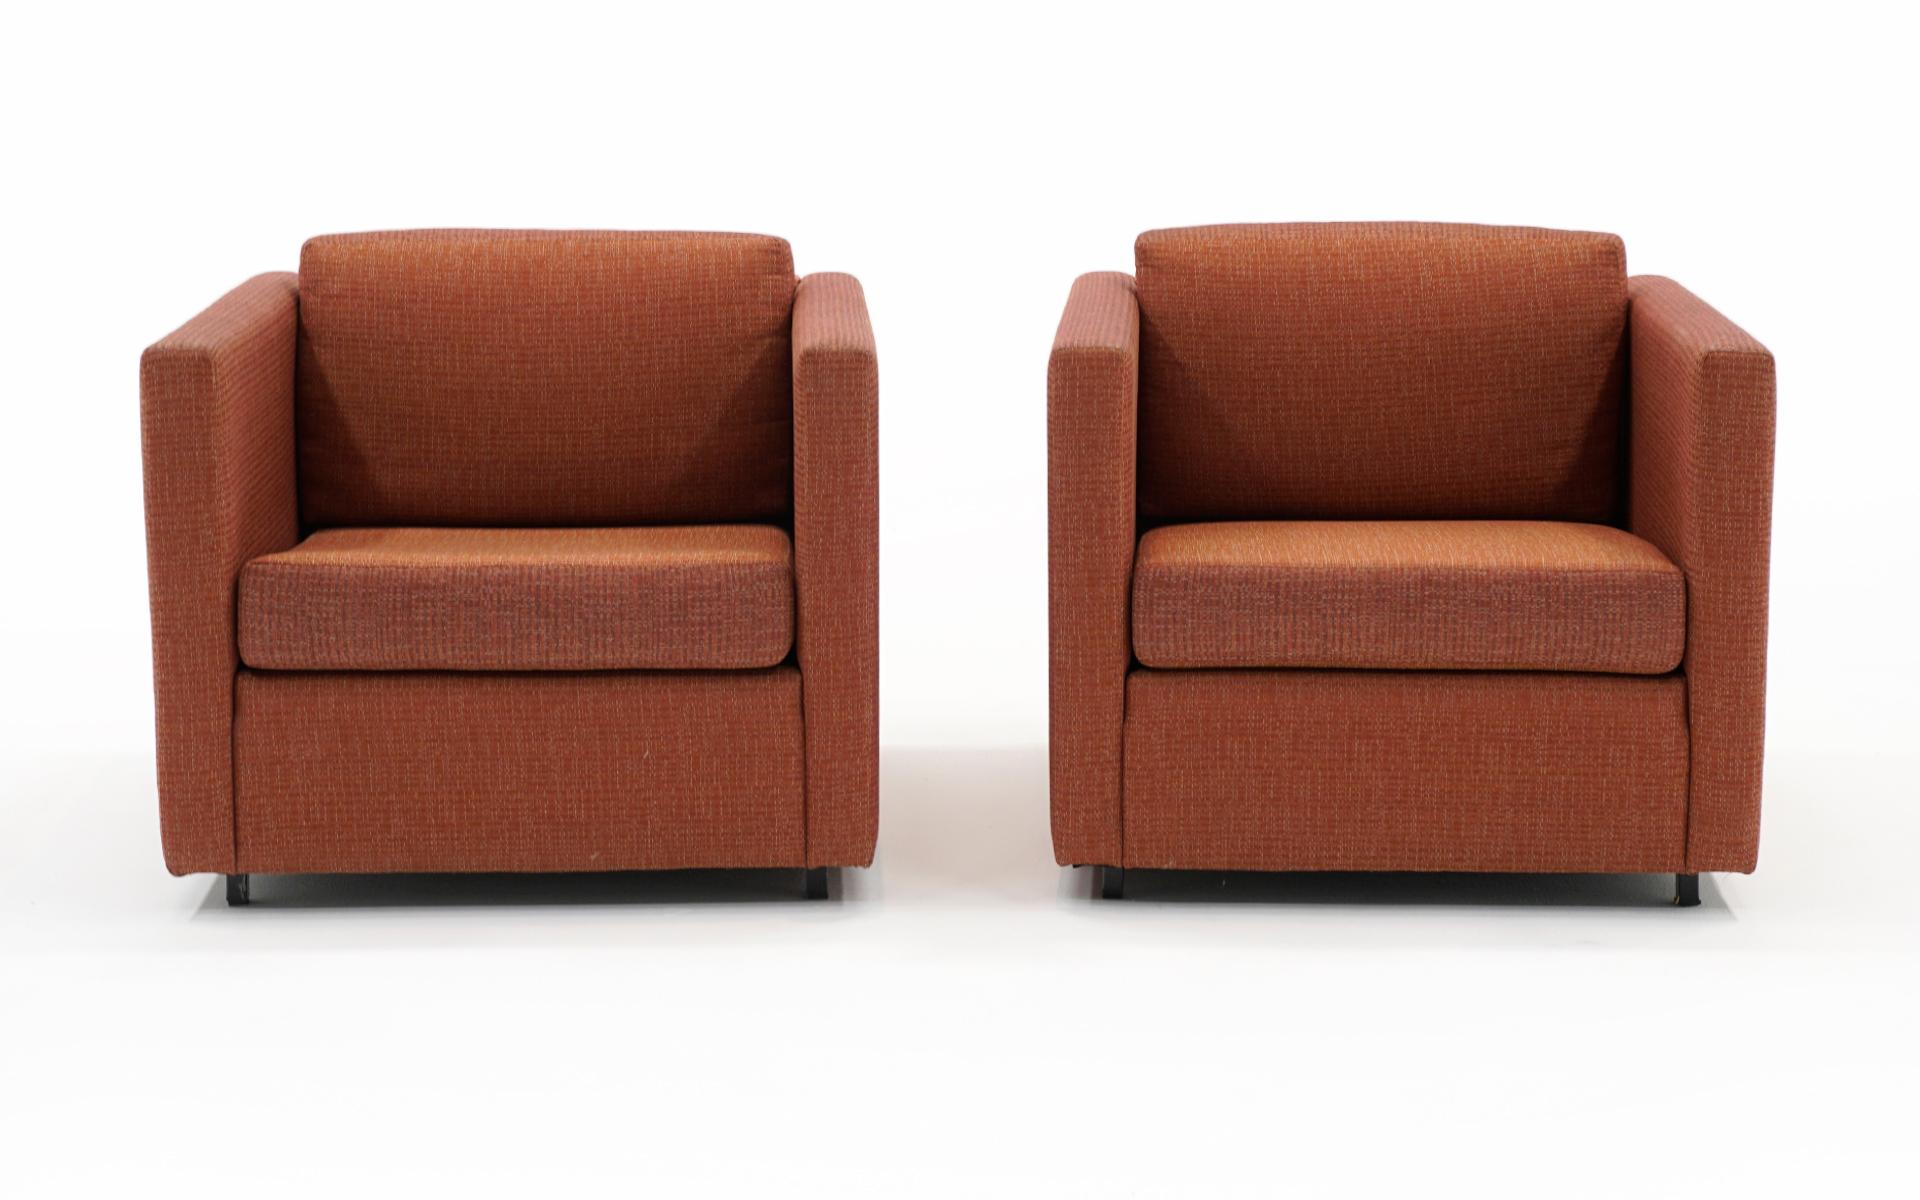 Ensemble assorti de quatre chaises longues carrées à bras pairs, conçu par Charles Pfister et fabriqué par Knoll. Nous avons fixé le prix de ces articles pour les rembourrer, mais ils peuvent être utilisés tels quels. Ils ont été retapissés dans le